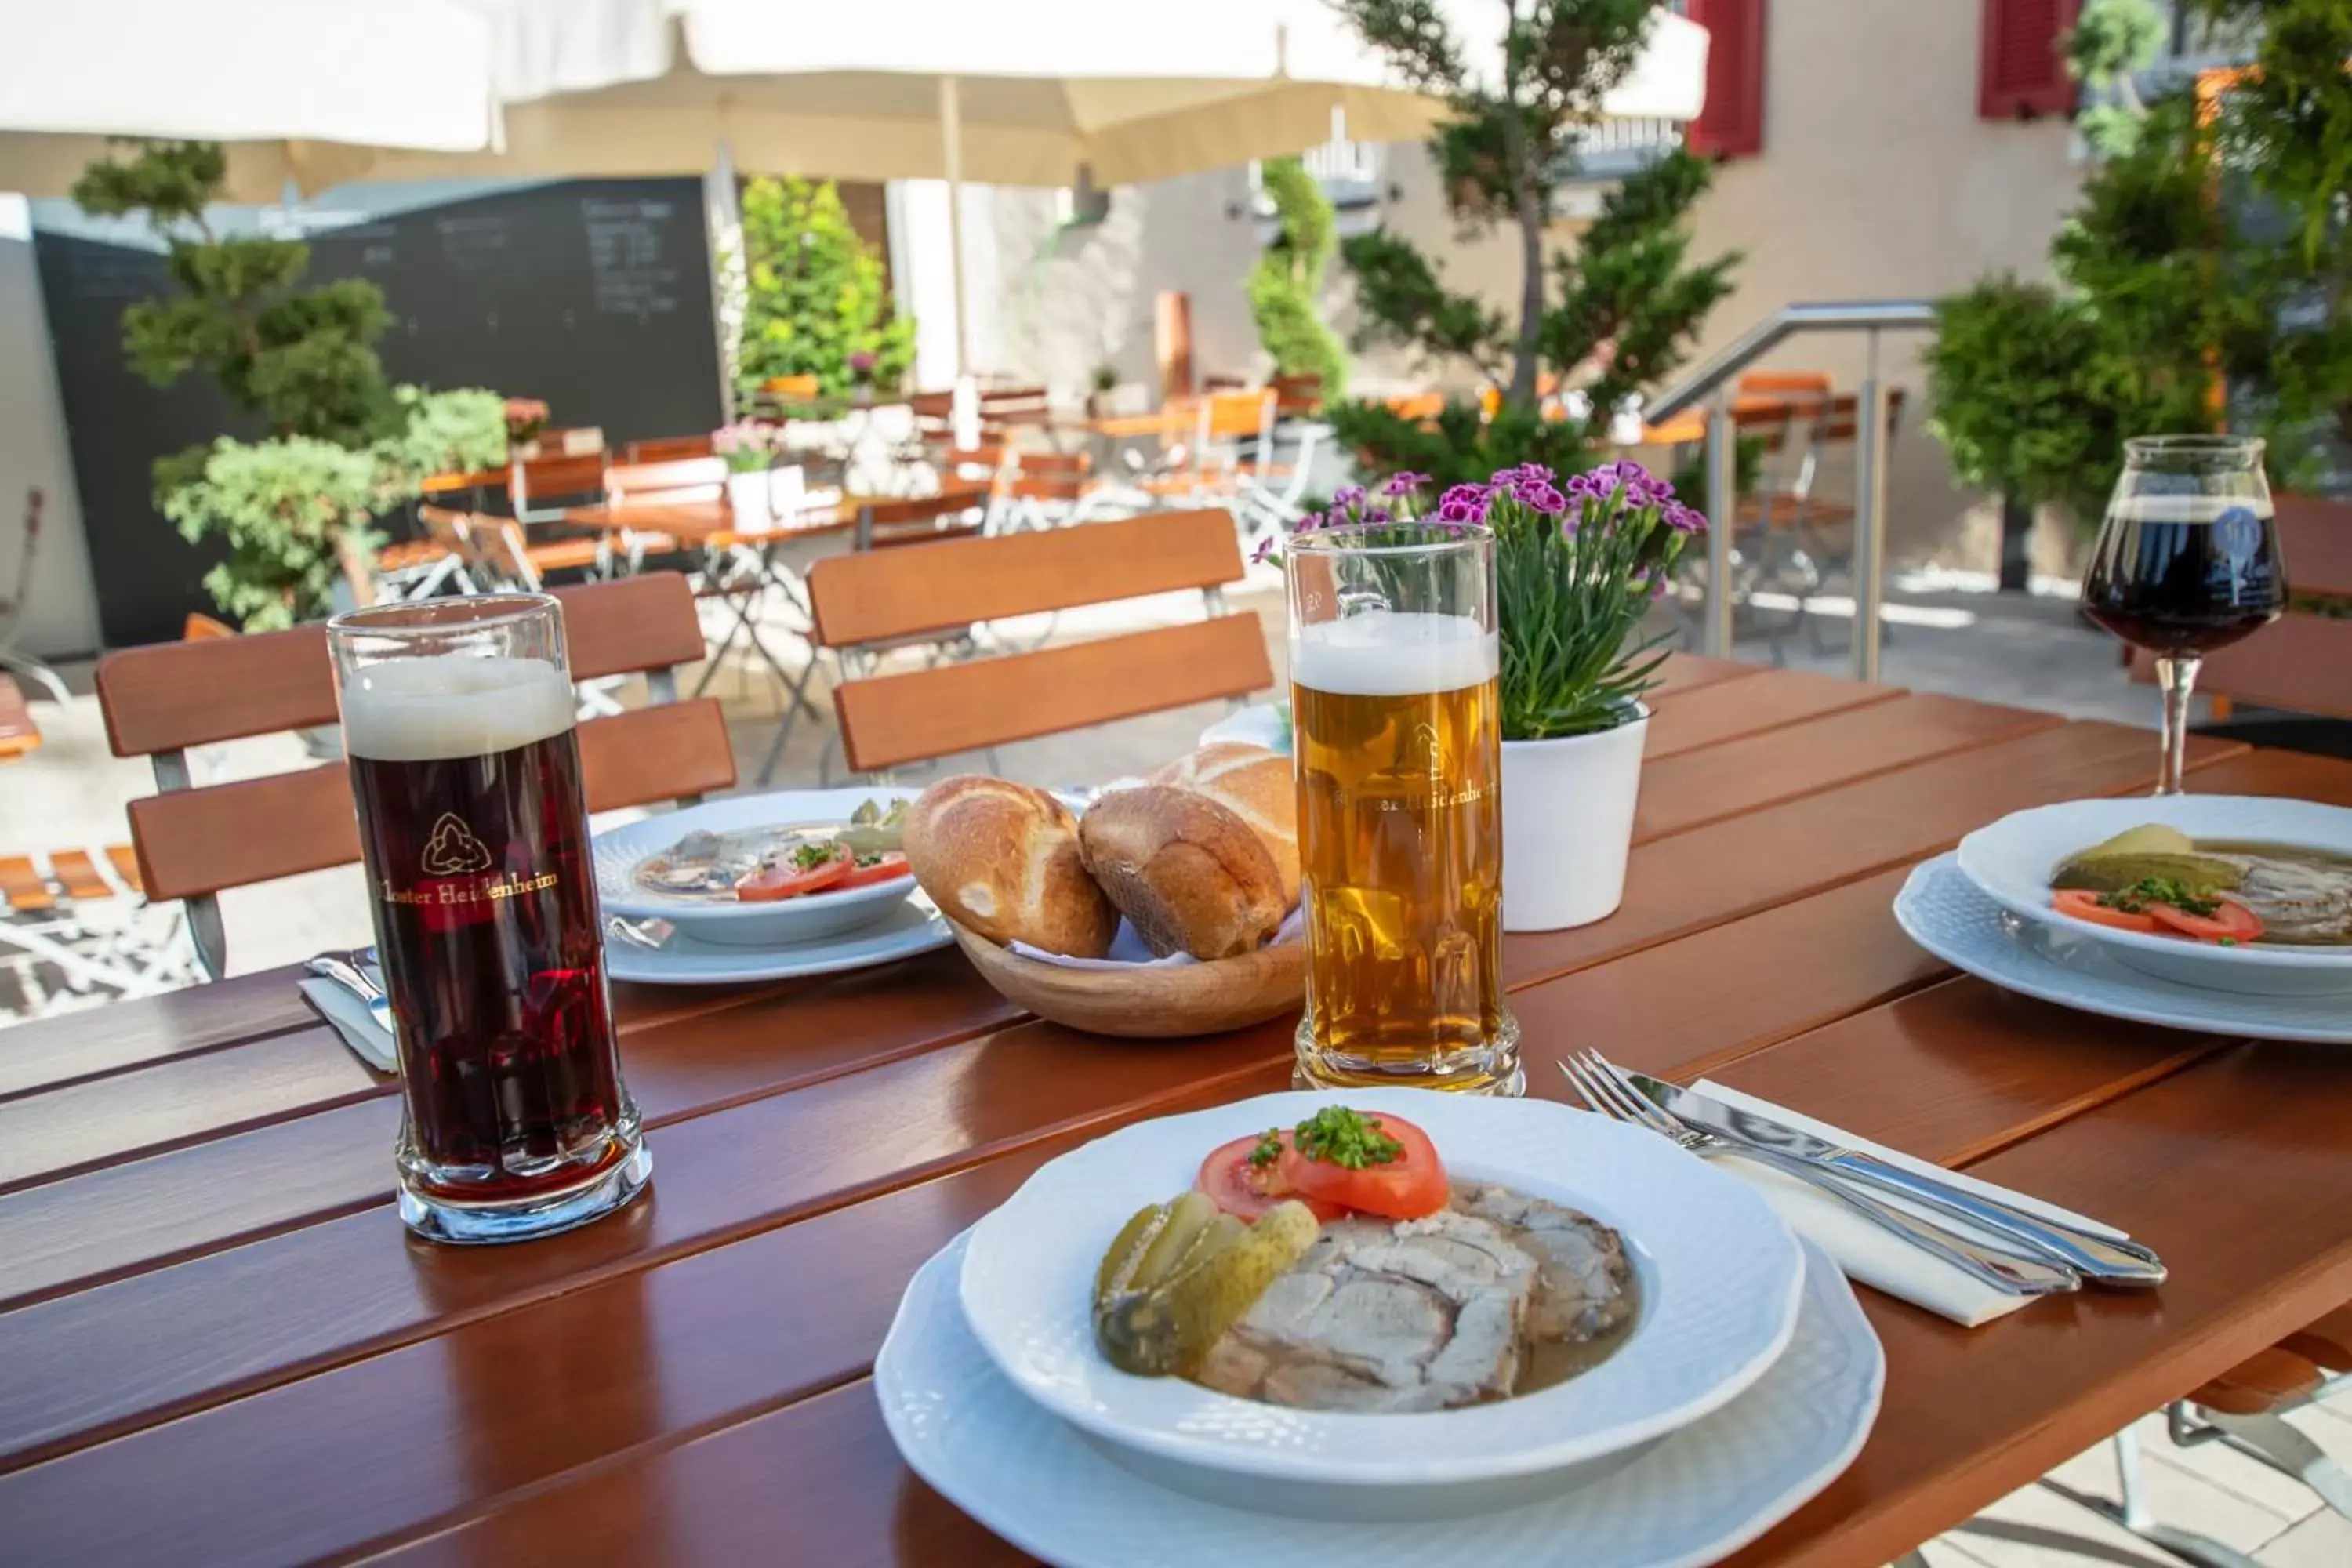 Food and drinks in Klostergasthof Heidenheim